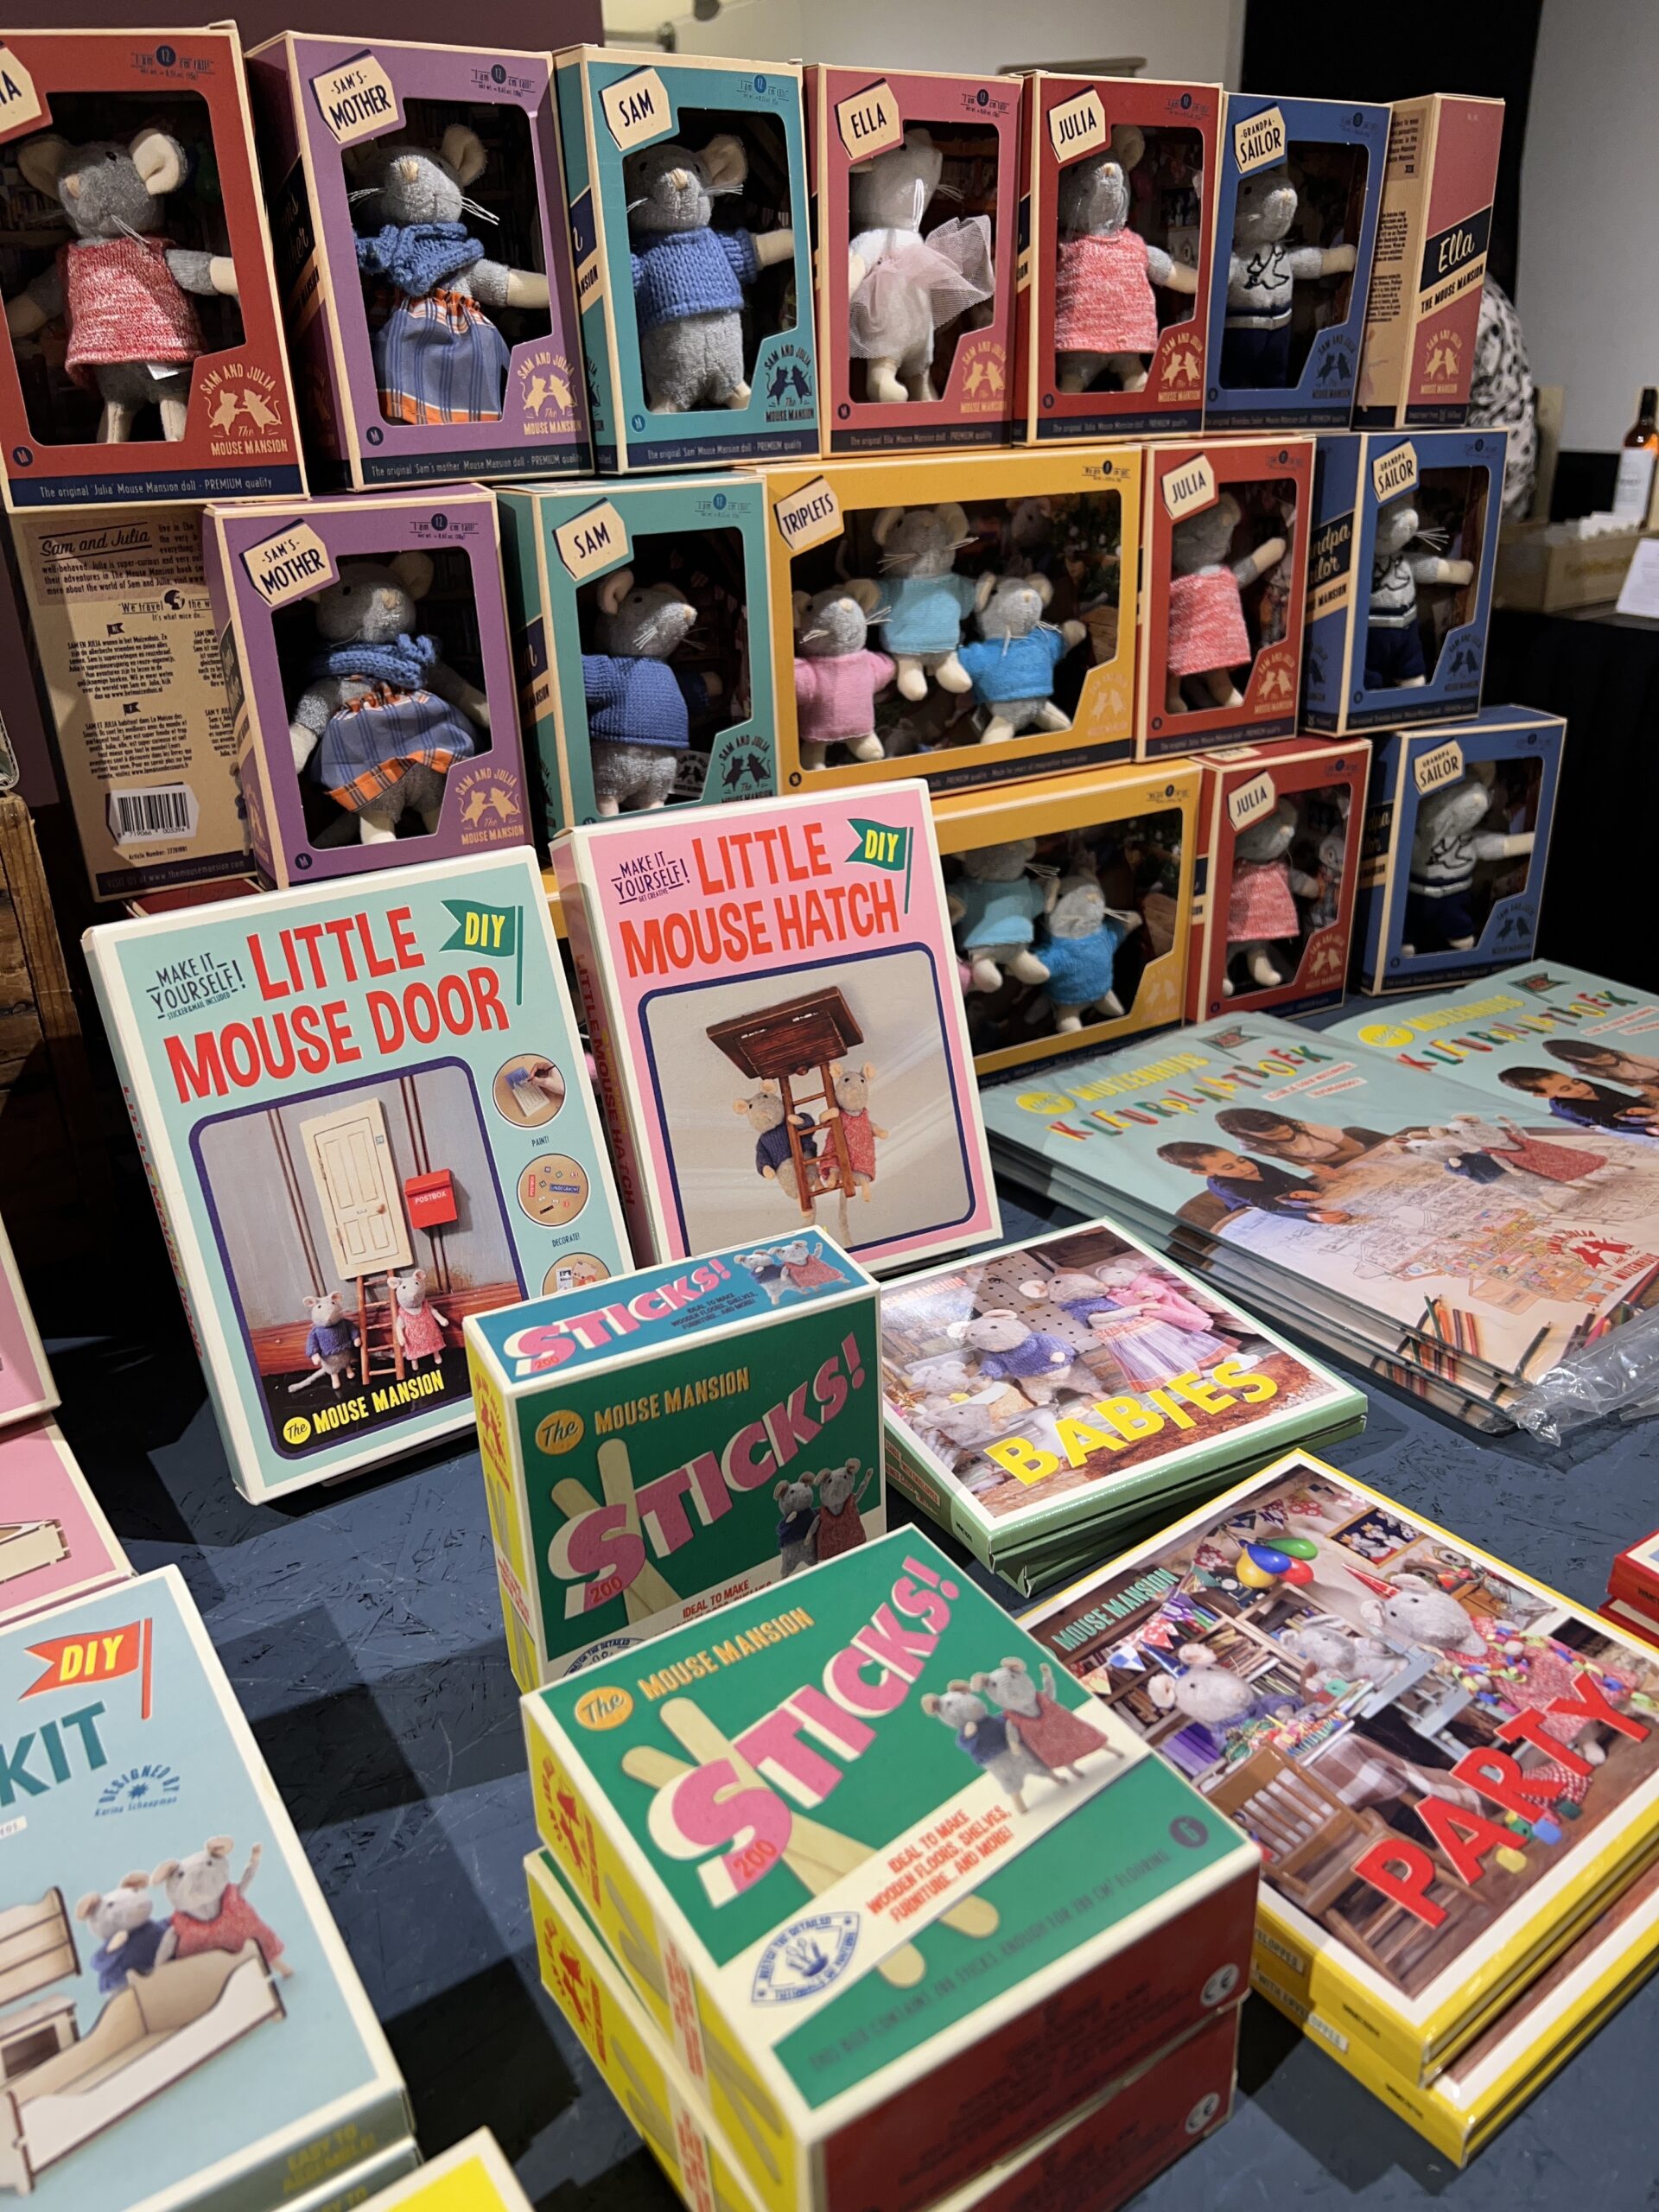 muizenhuis artikelen die verkocht worden in speelgoedwinkel houten aap